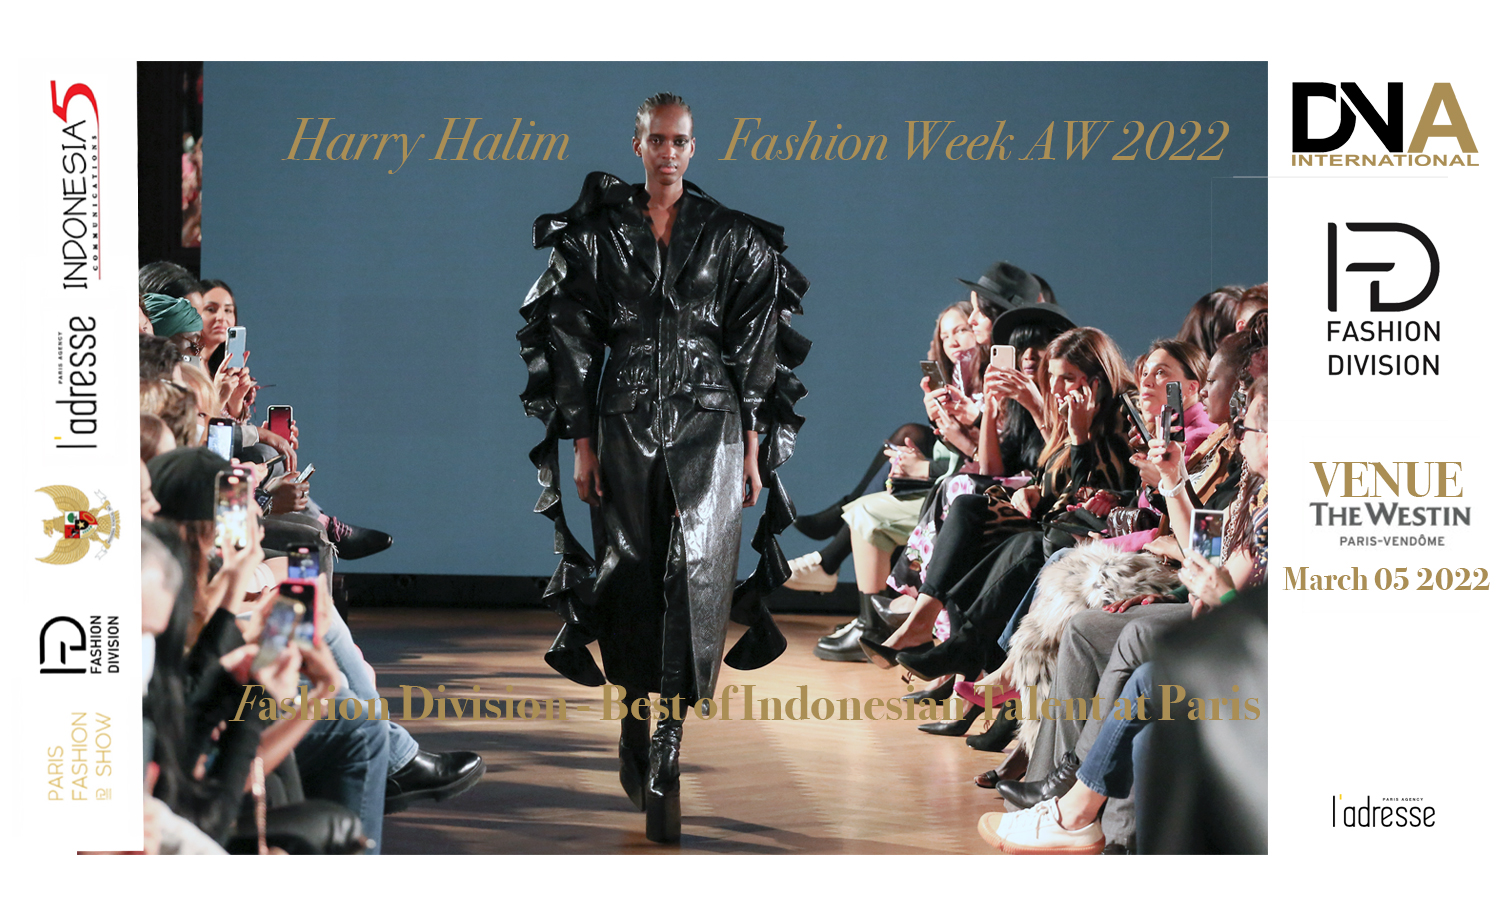 Harry Halim – Fashion Week AW 2022